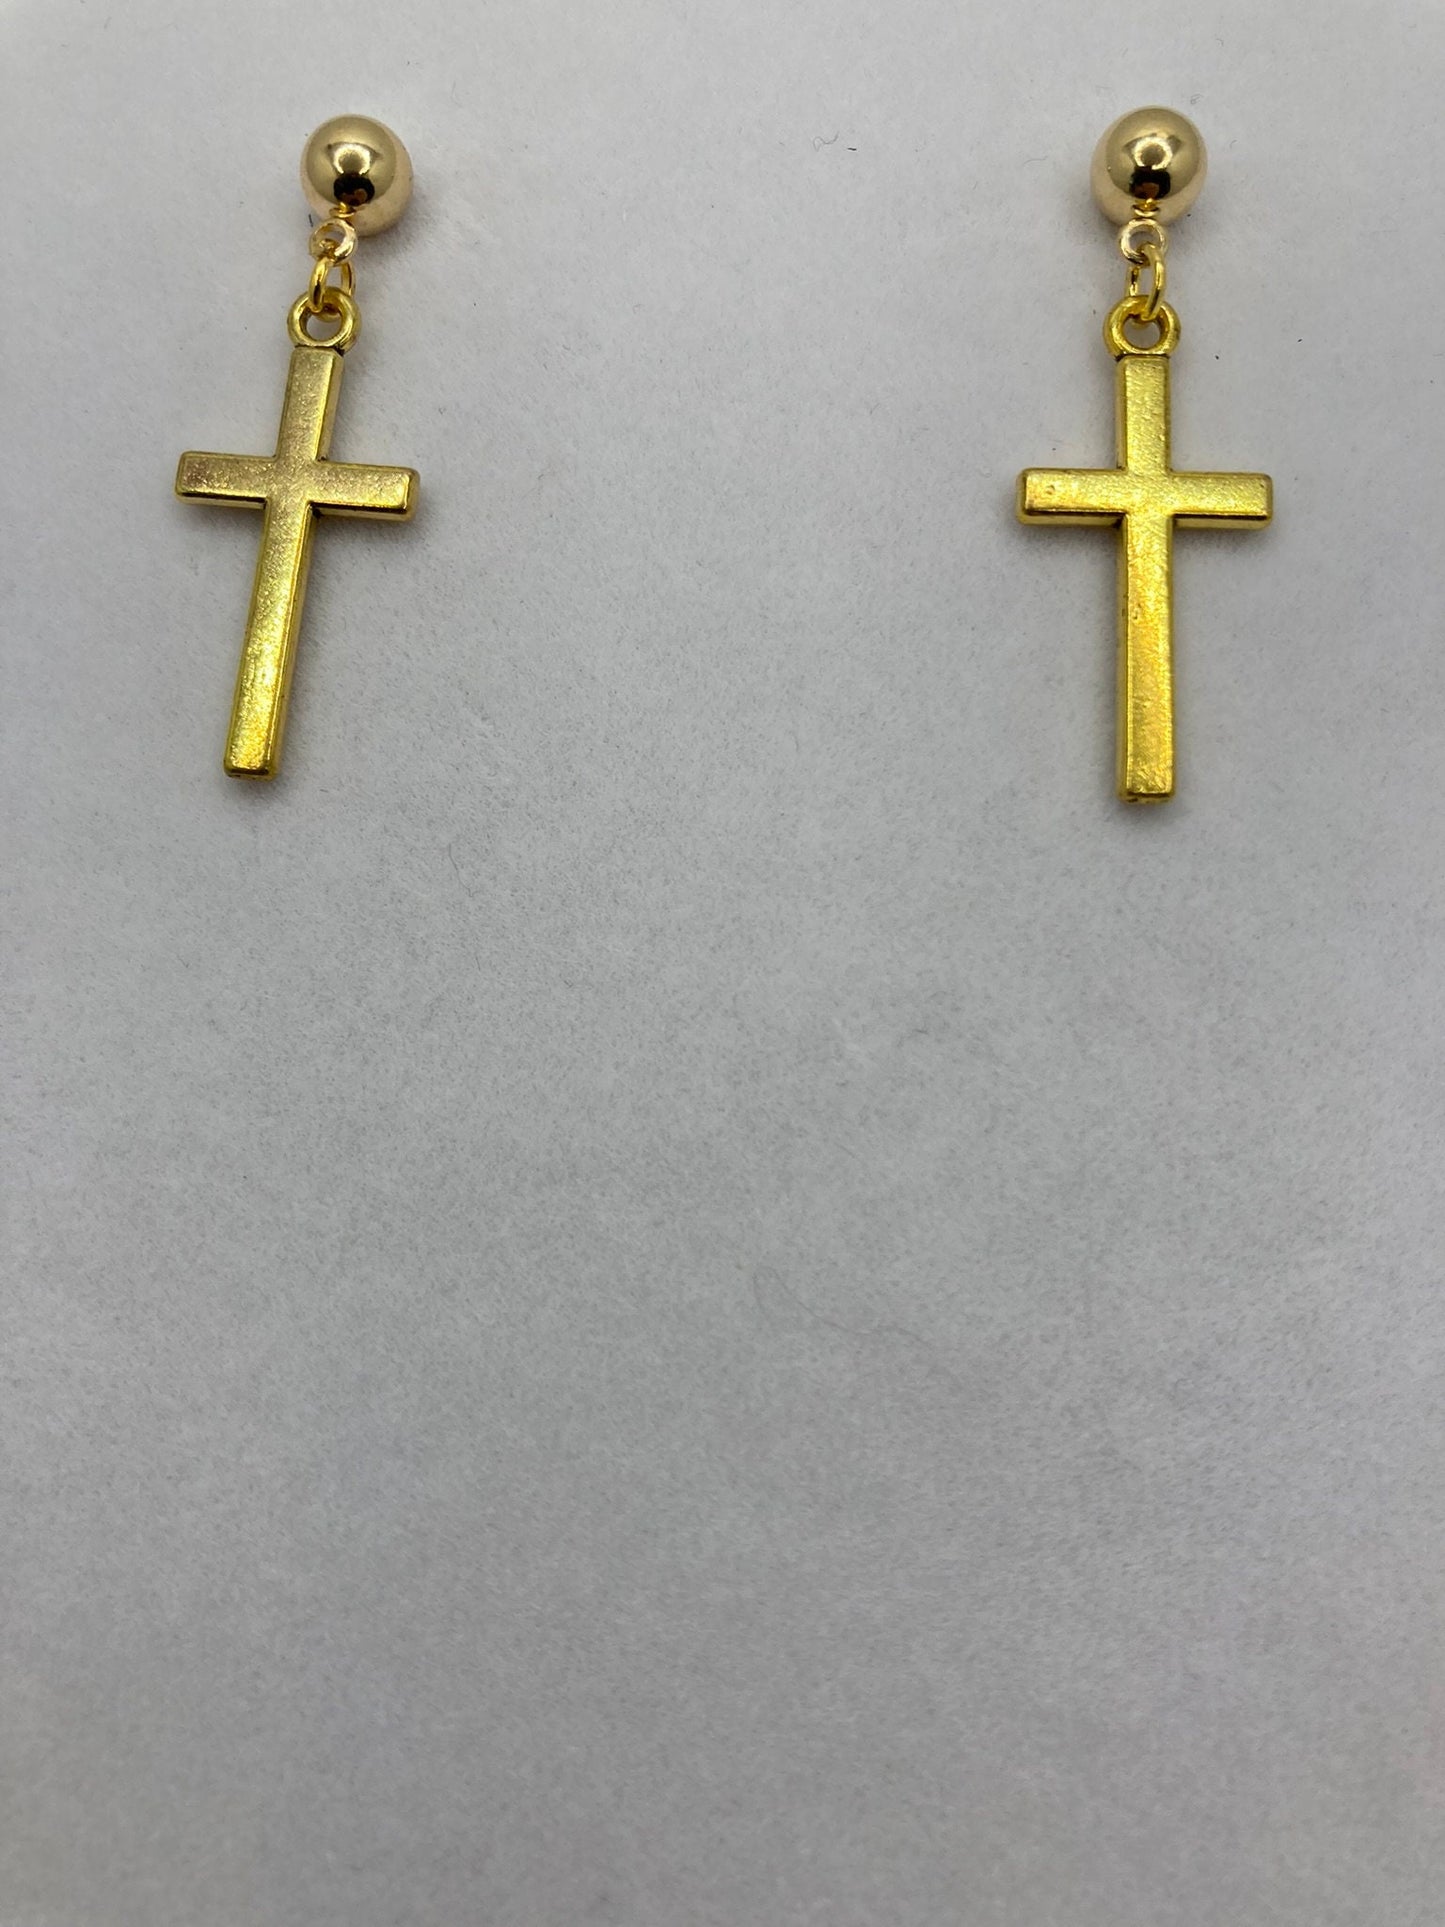 Gold cross earring Stud, dangle Earring, Religious, Southwest, Jewelry Style 5